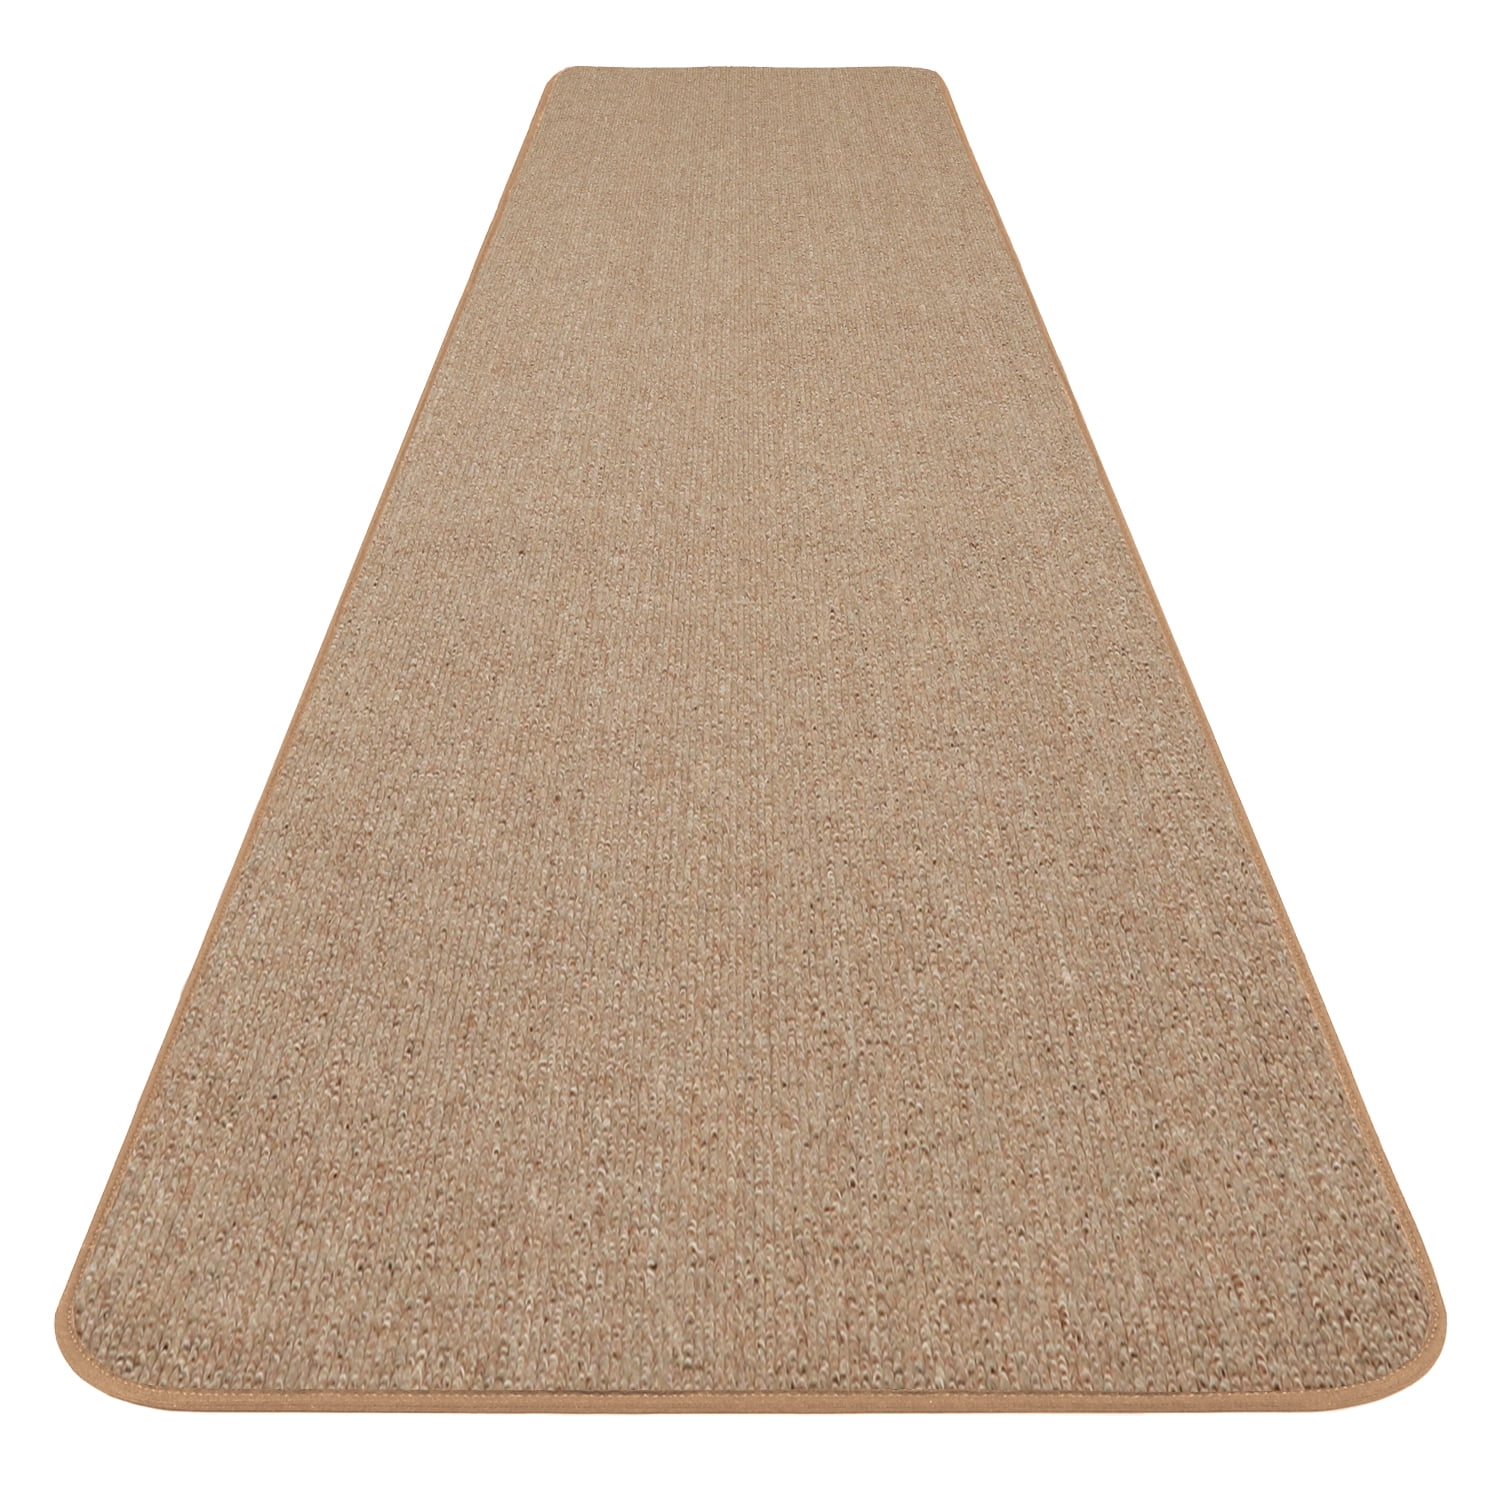 8 ft x 27 in SKID-RESISTANT Carpet Runner PEBBLE BEIGE hall area rug floor mat 